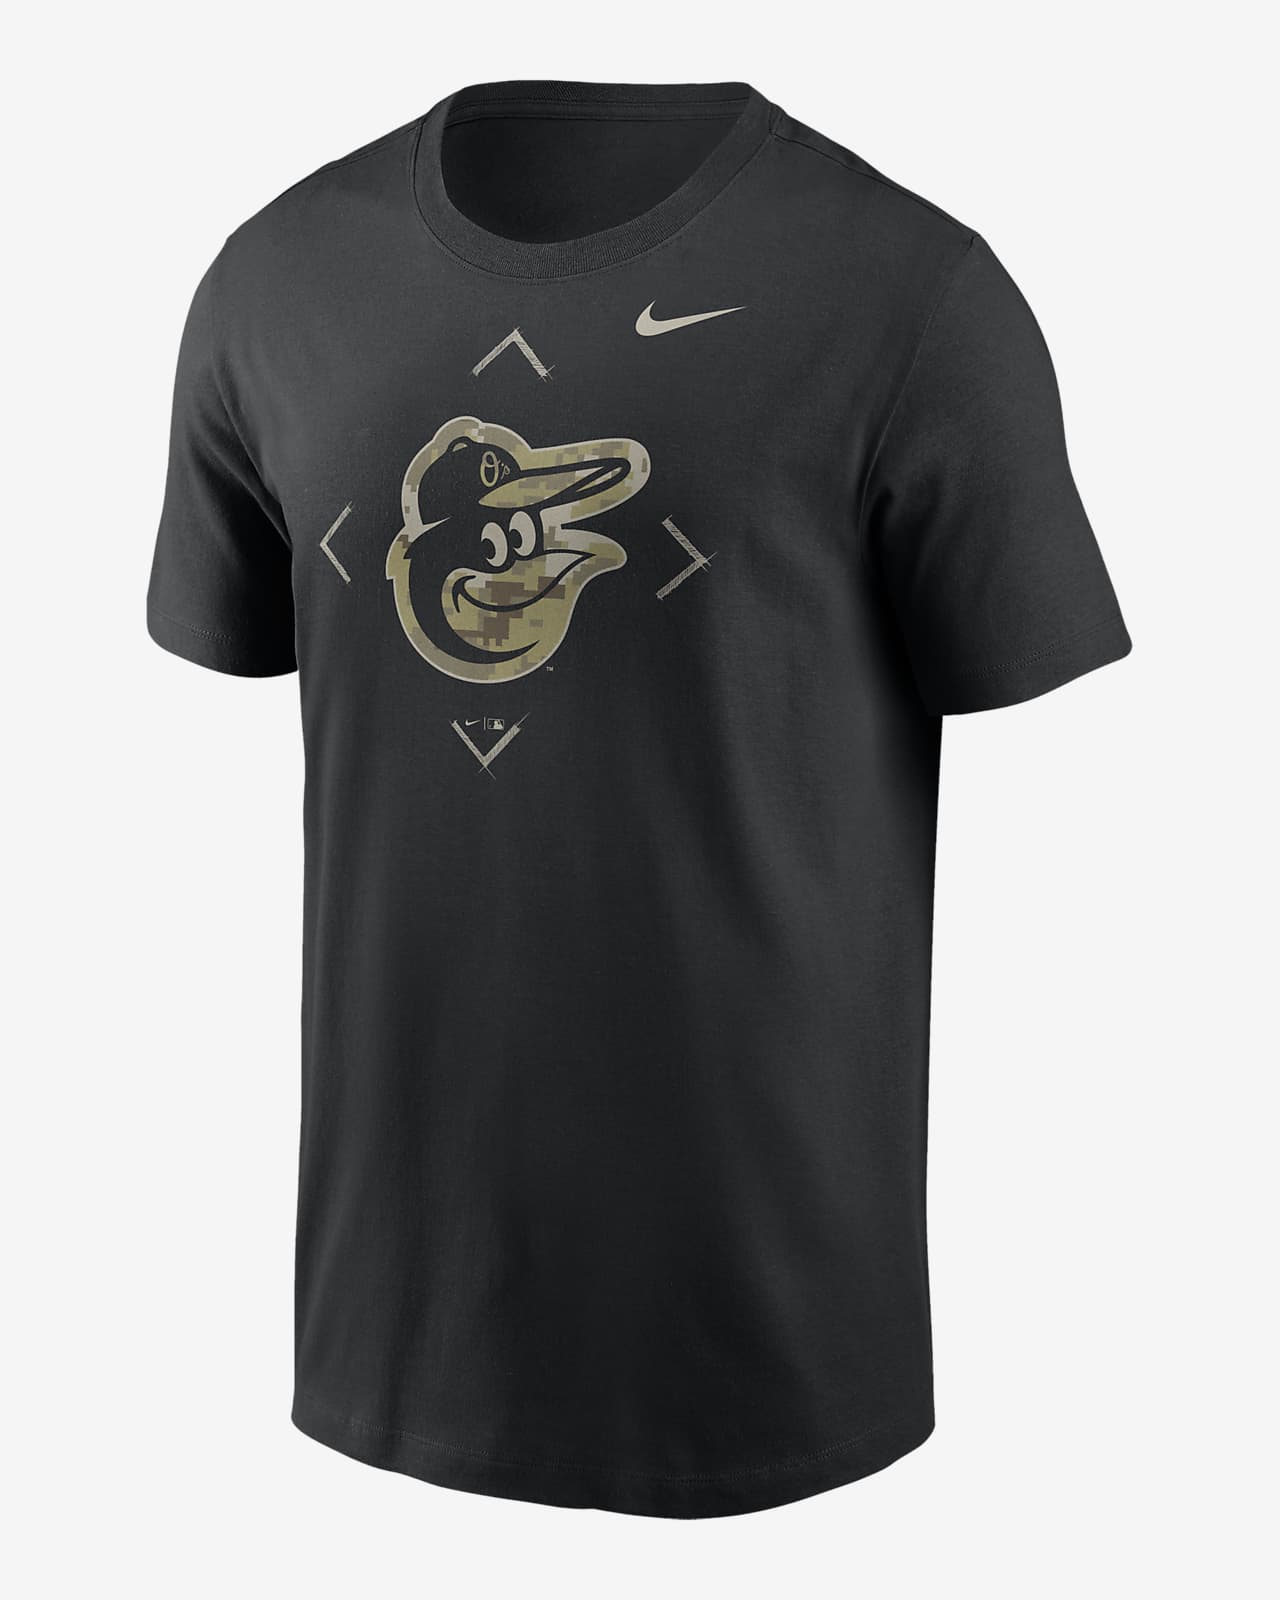 Playera Nike de la MLB para hombre Baltimore Orioles Camo Logo